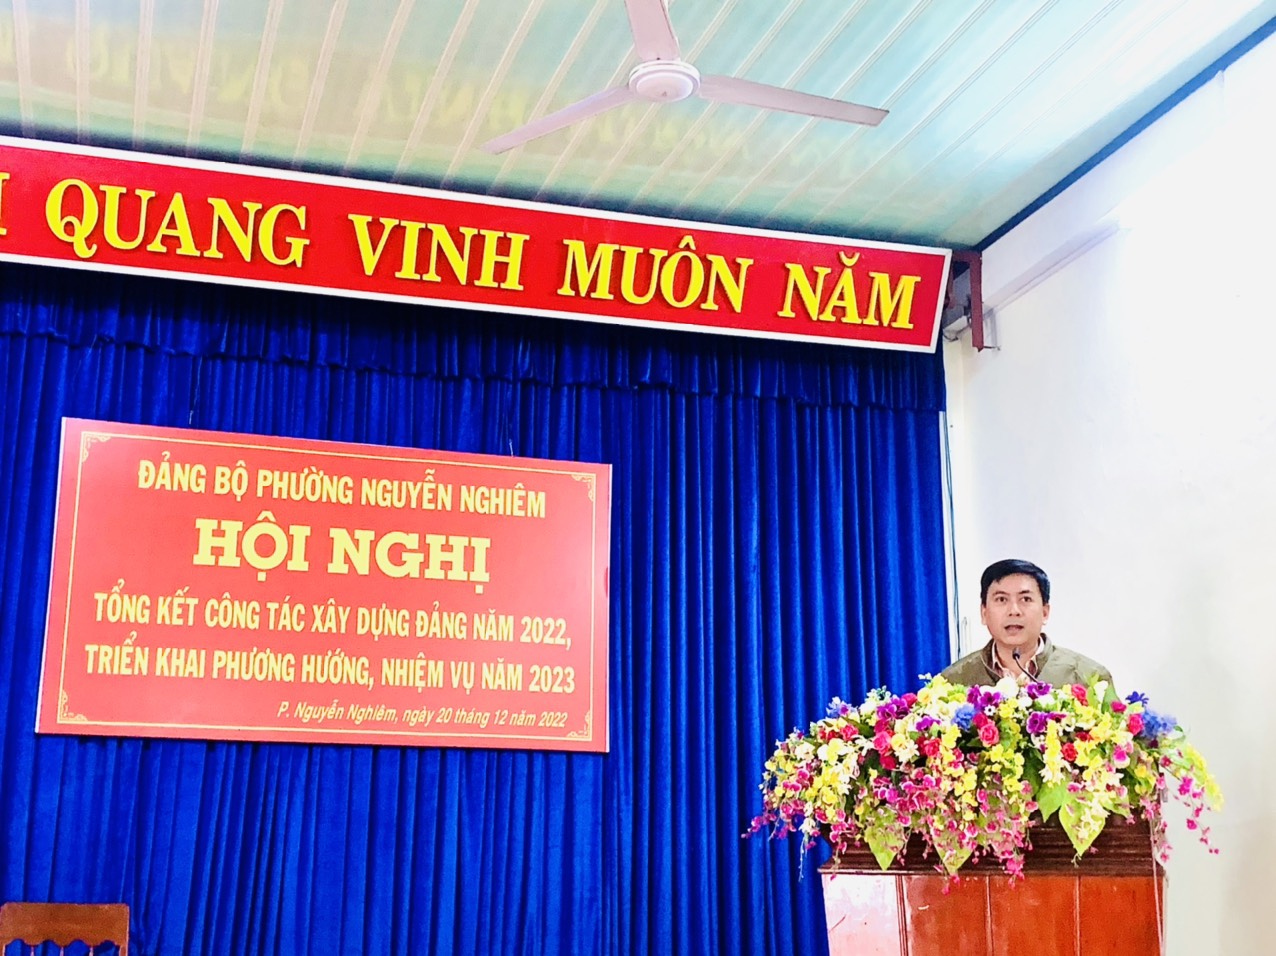 Đảng ủy Phường Nguyễn Nghiêm tổng kết việc thực hiện nhiệm vụ năm 2022 và triển khai phương hướng, nhiệm vụ, giải pháp năm 2023